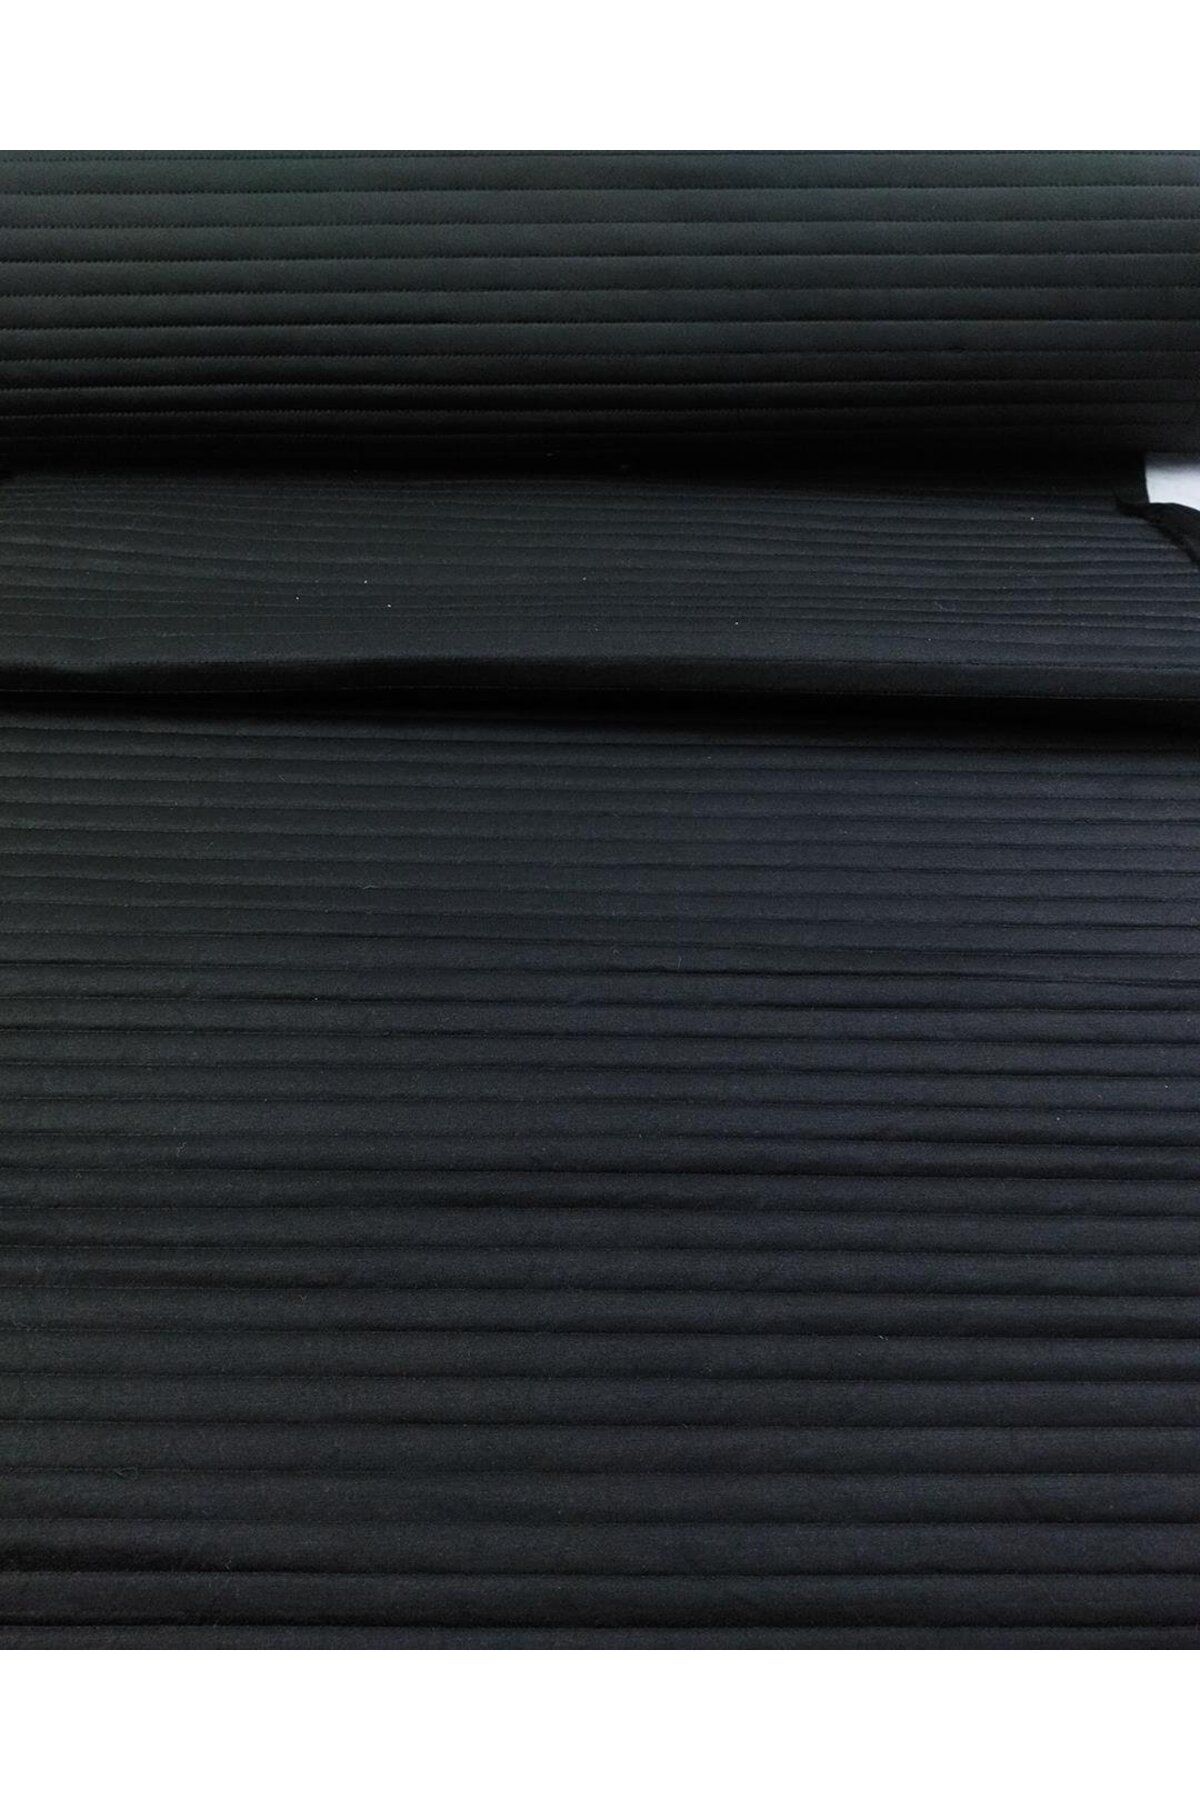 Kumaş Parça Dalgıç Jarse Kağıt Tela Elyaf ve Süprem Penye ile Lamine Edilmiş Siyah Renk (En 75 cm x Boy 270 cm)